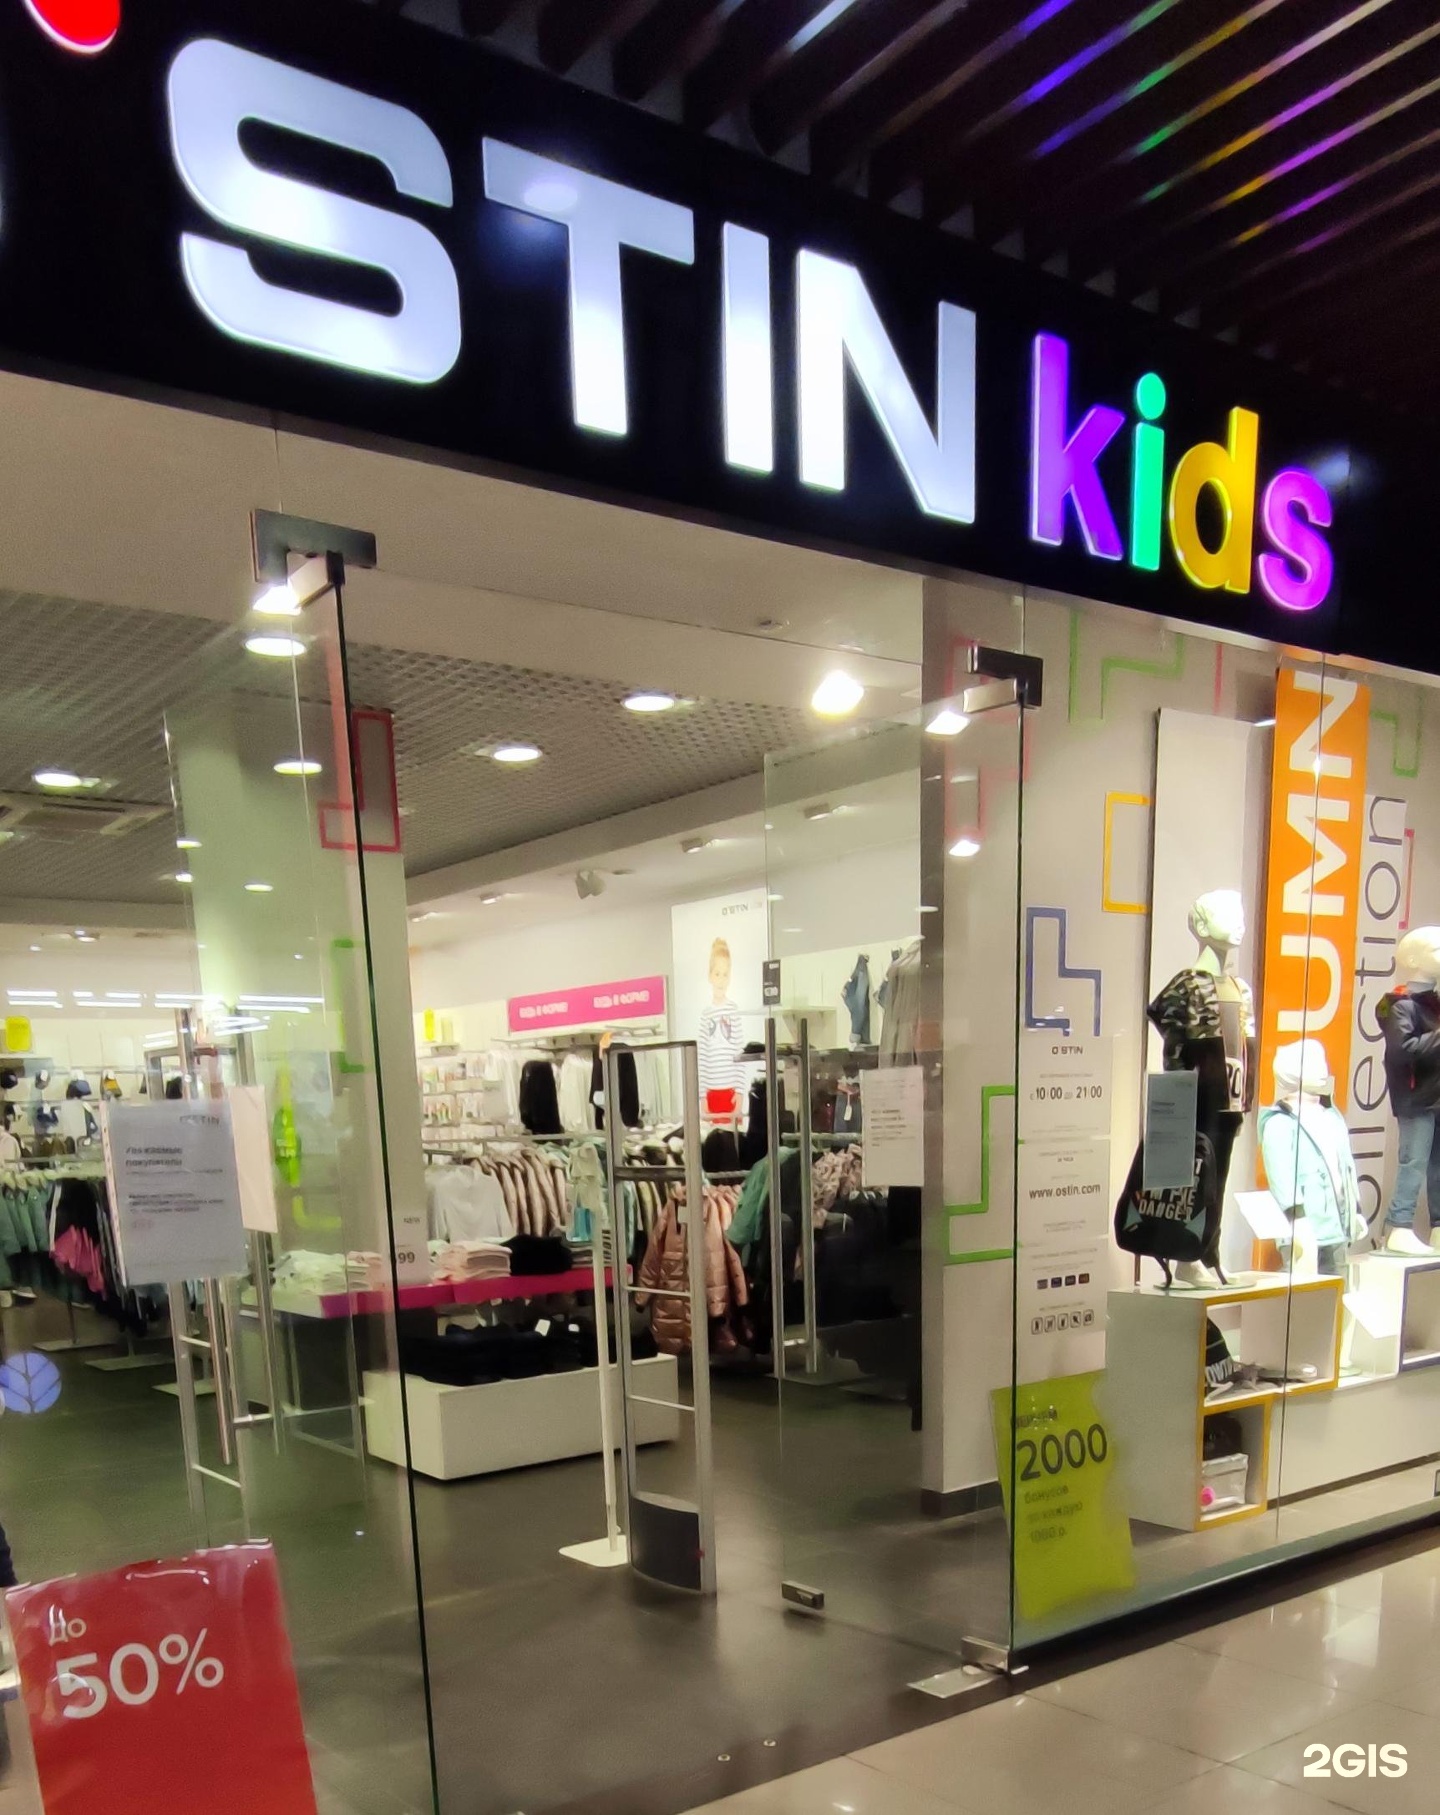 Магазин Одежды Для Детей От 0